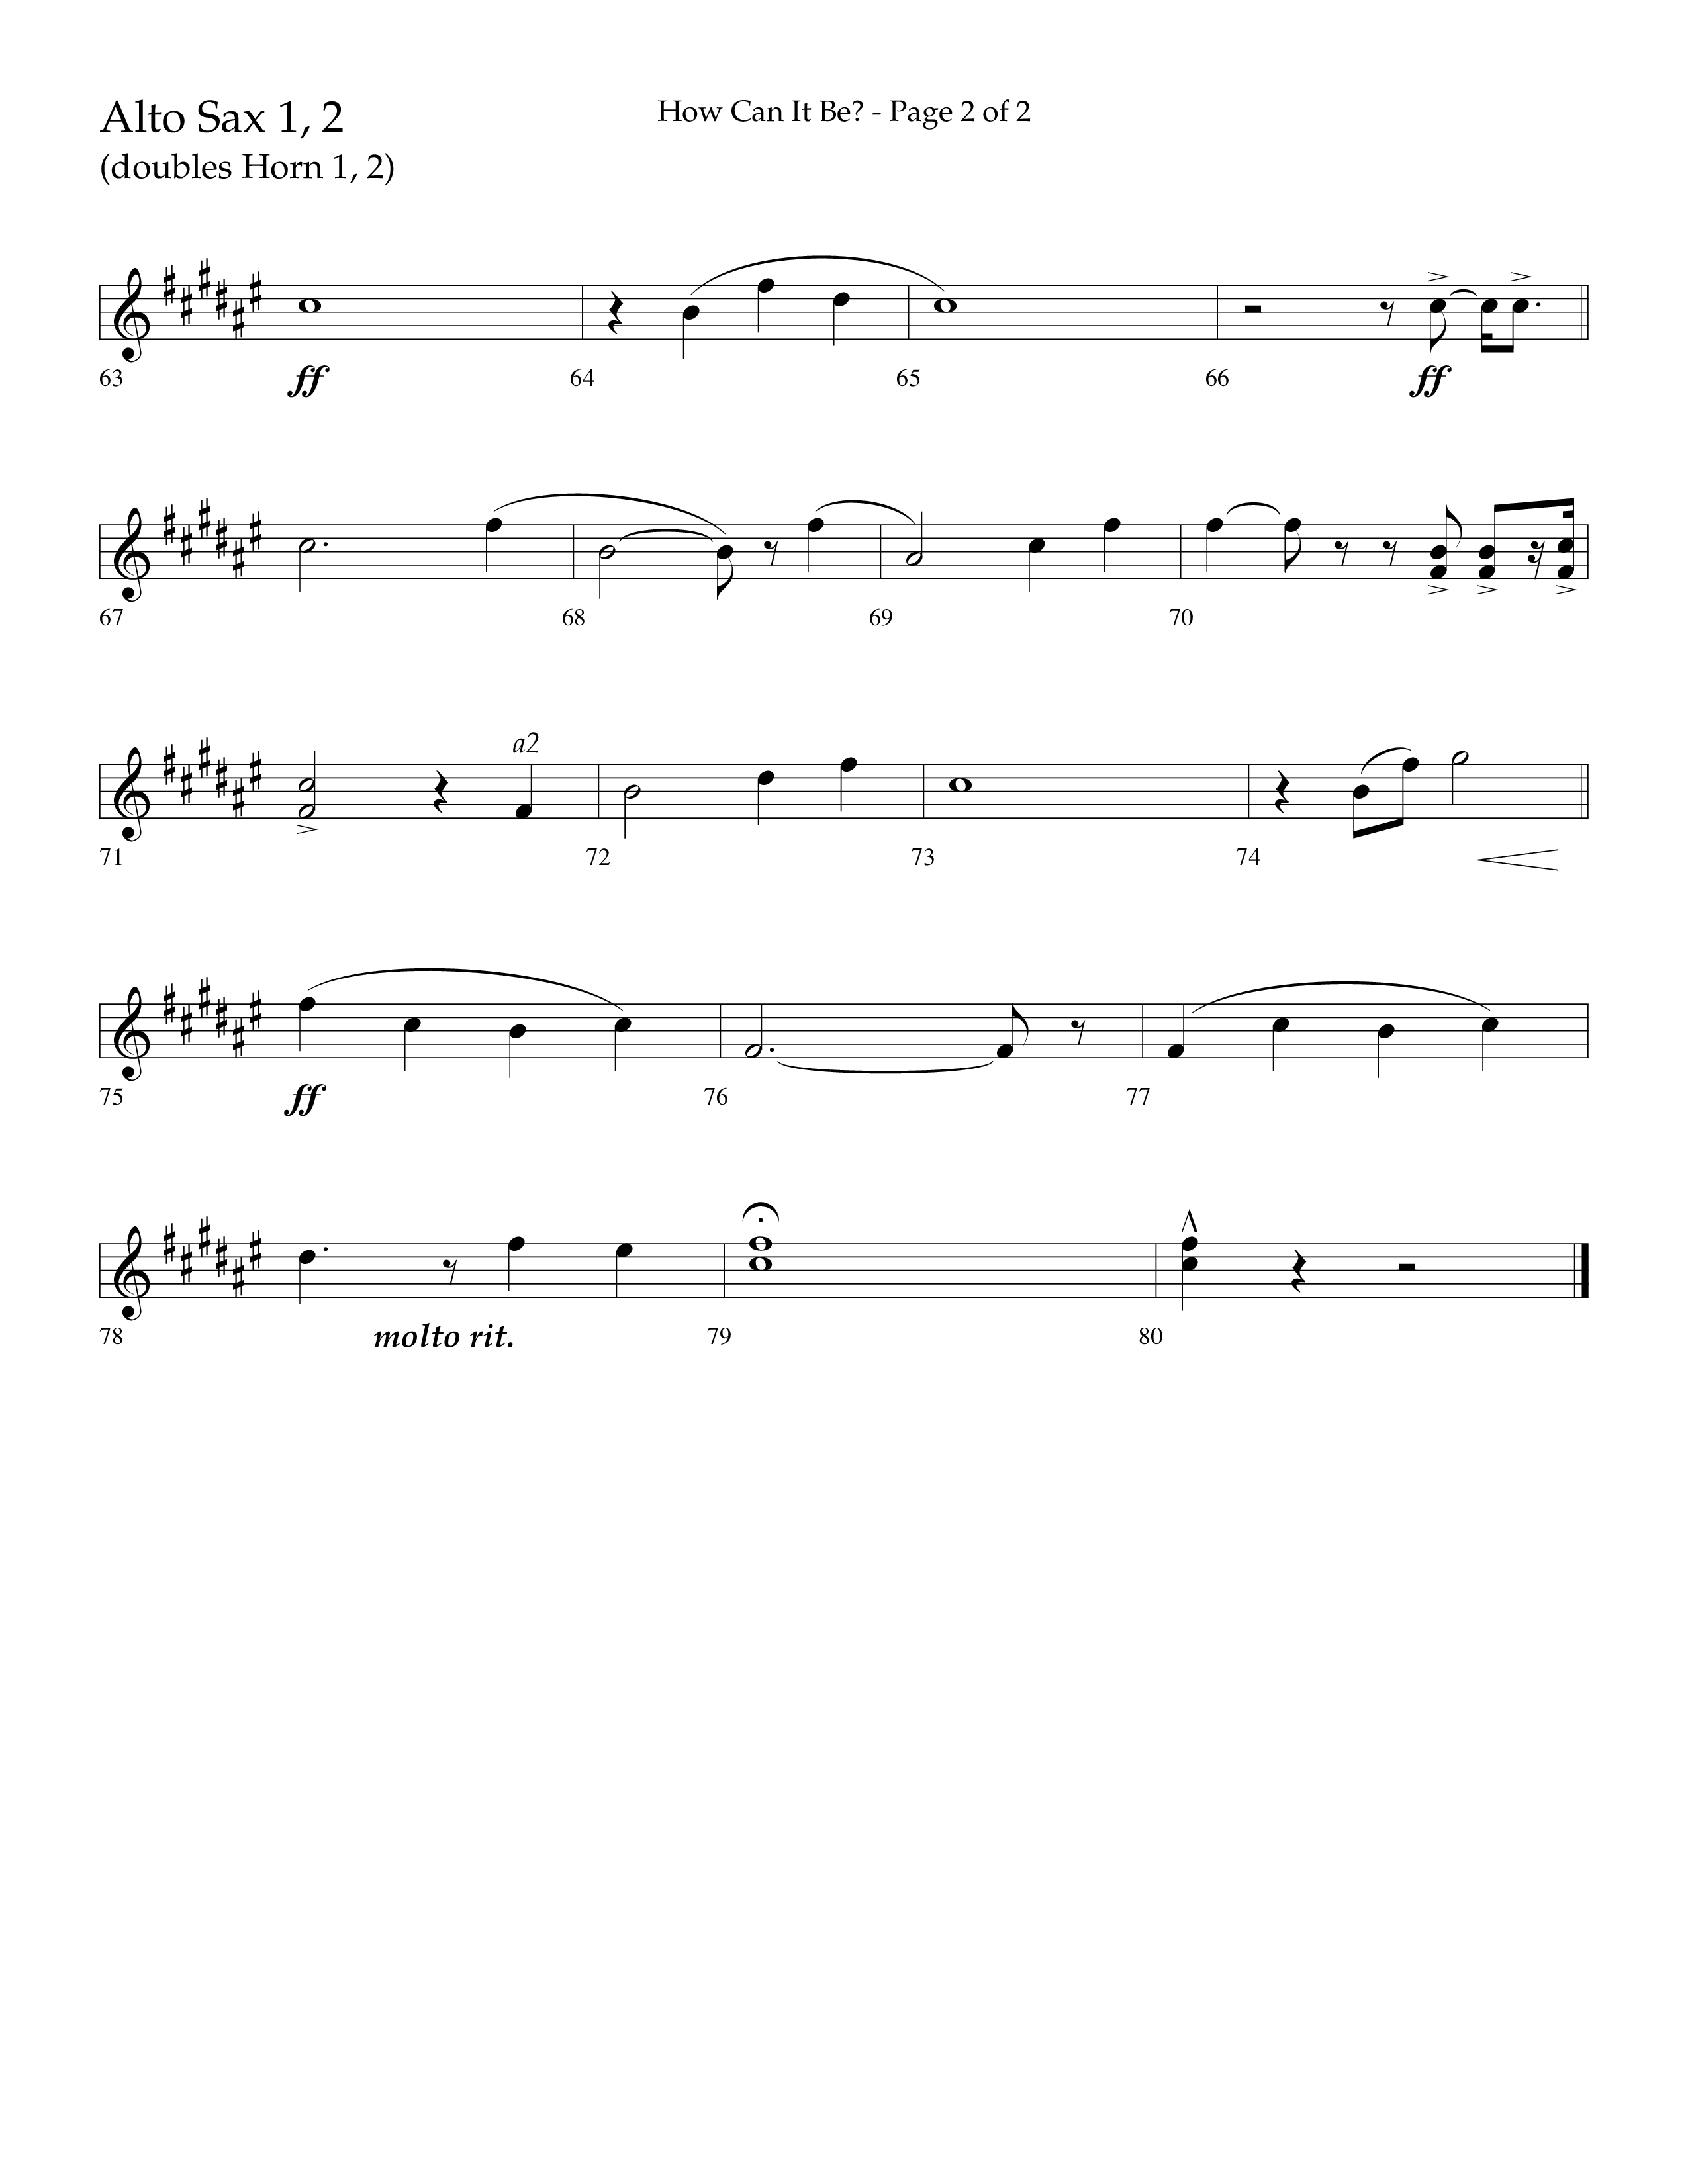 How Can It Be (Choral Anthem SATB) Alto Sax 1/2 (Lifeway Choral / Arr. Daniel Semsen)